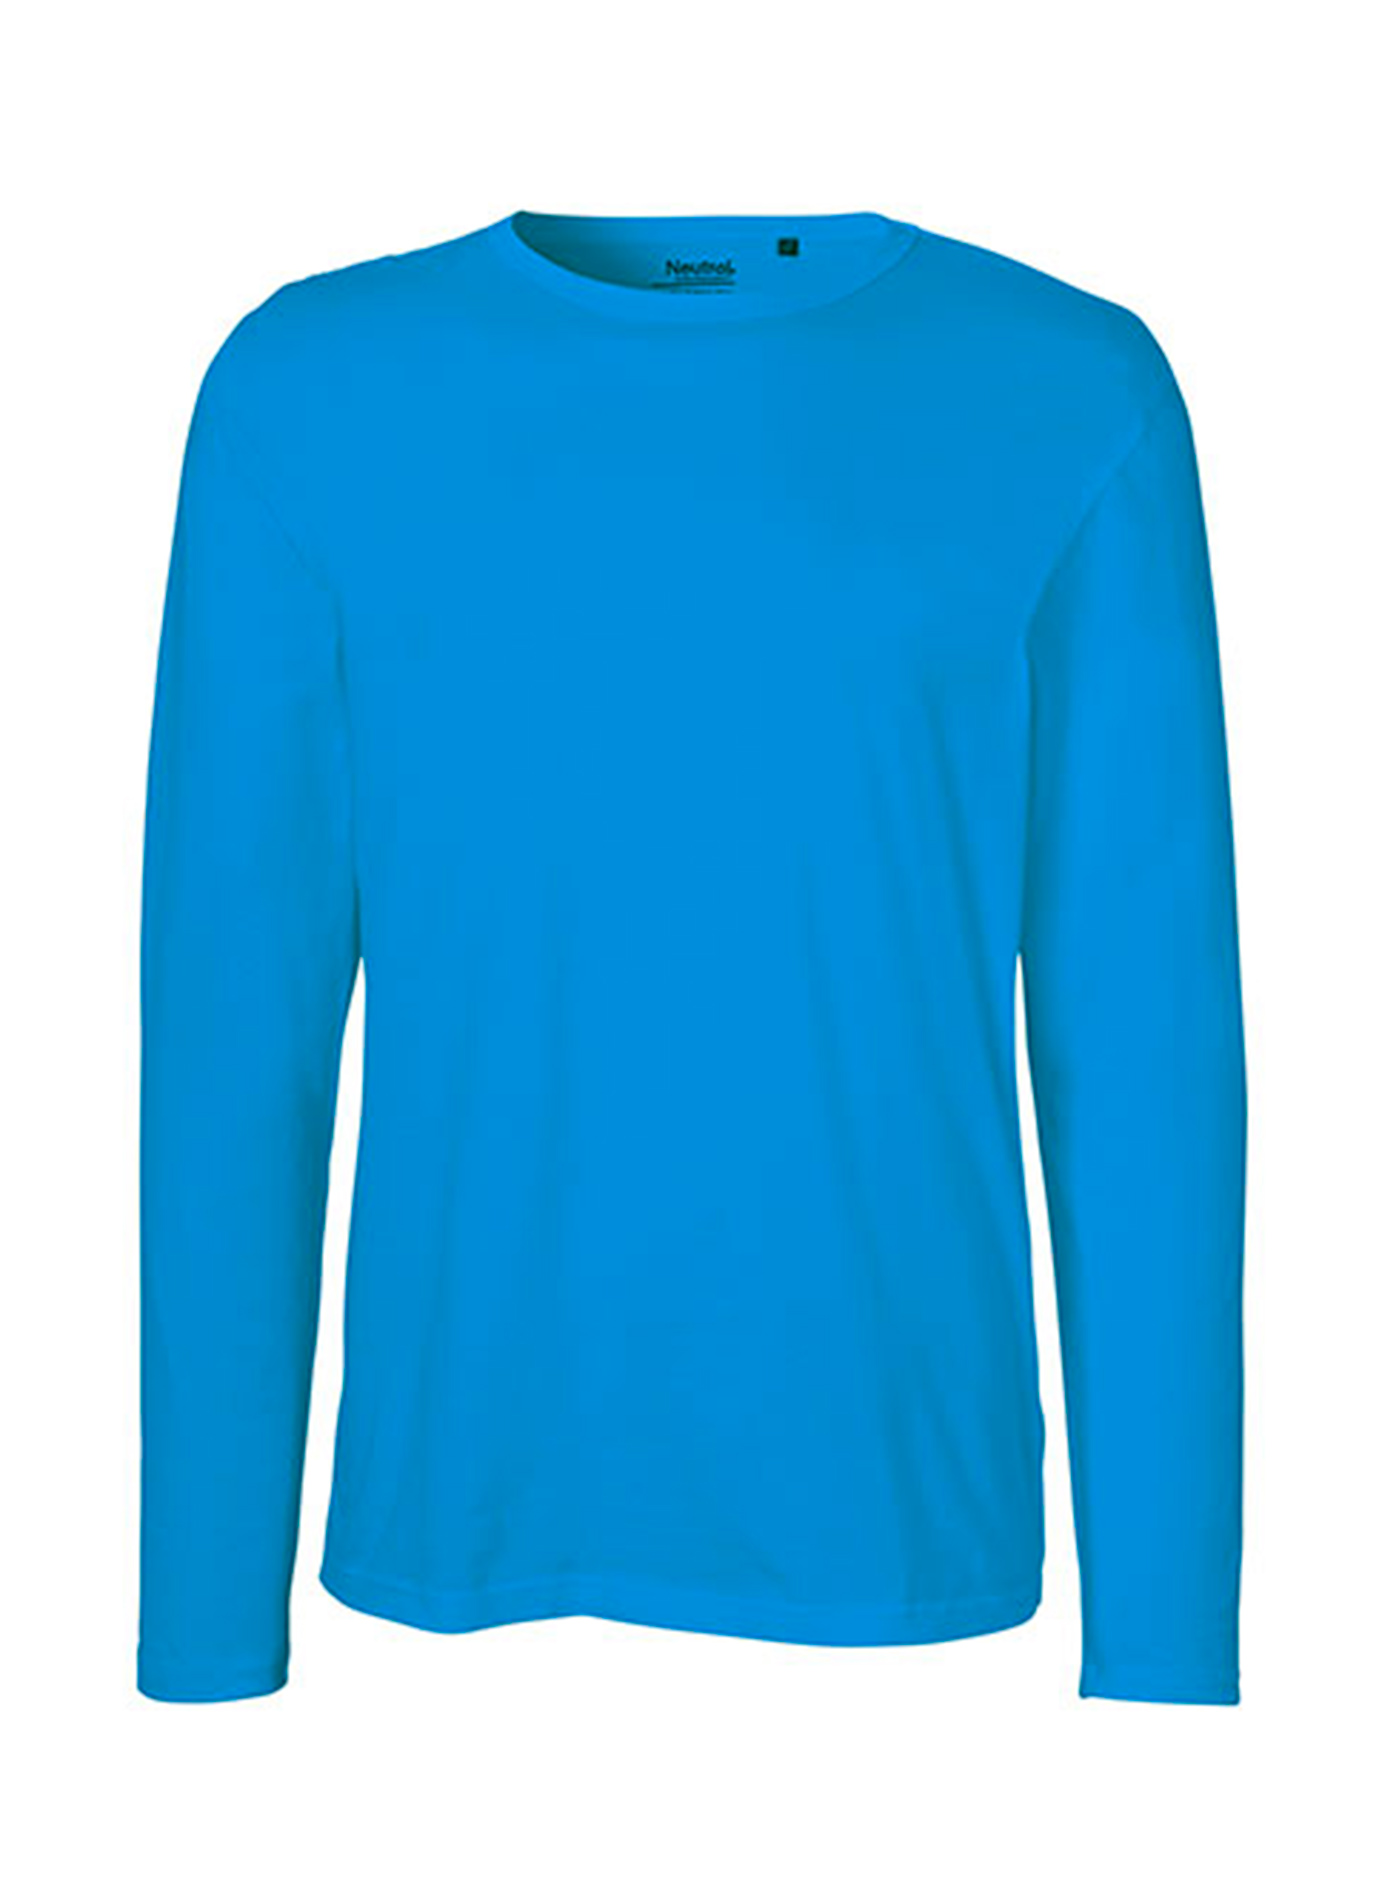 Pánské tričko s dlouhým rukávem Neutral - Safírově modrá L